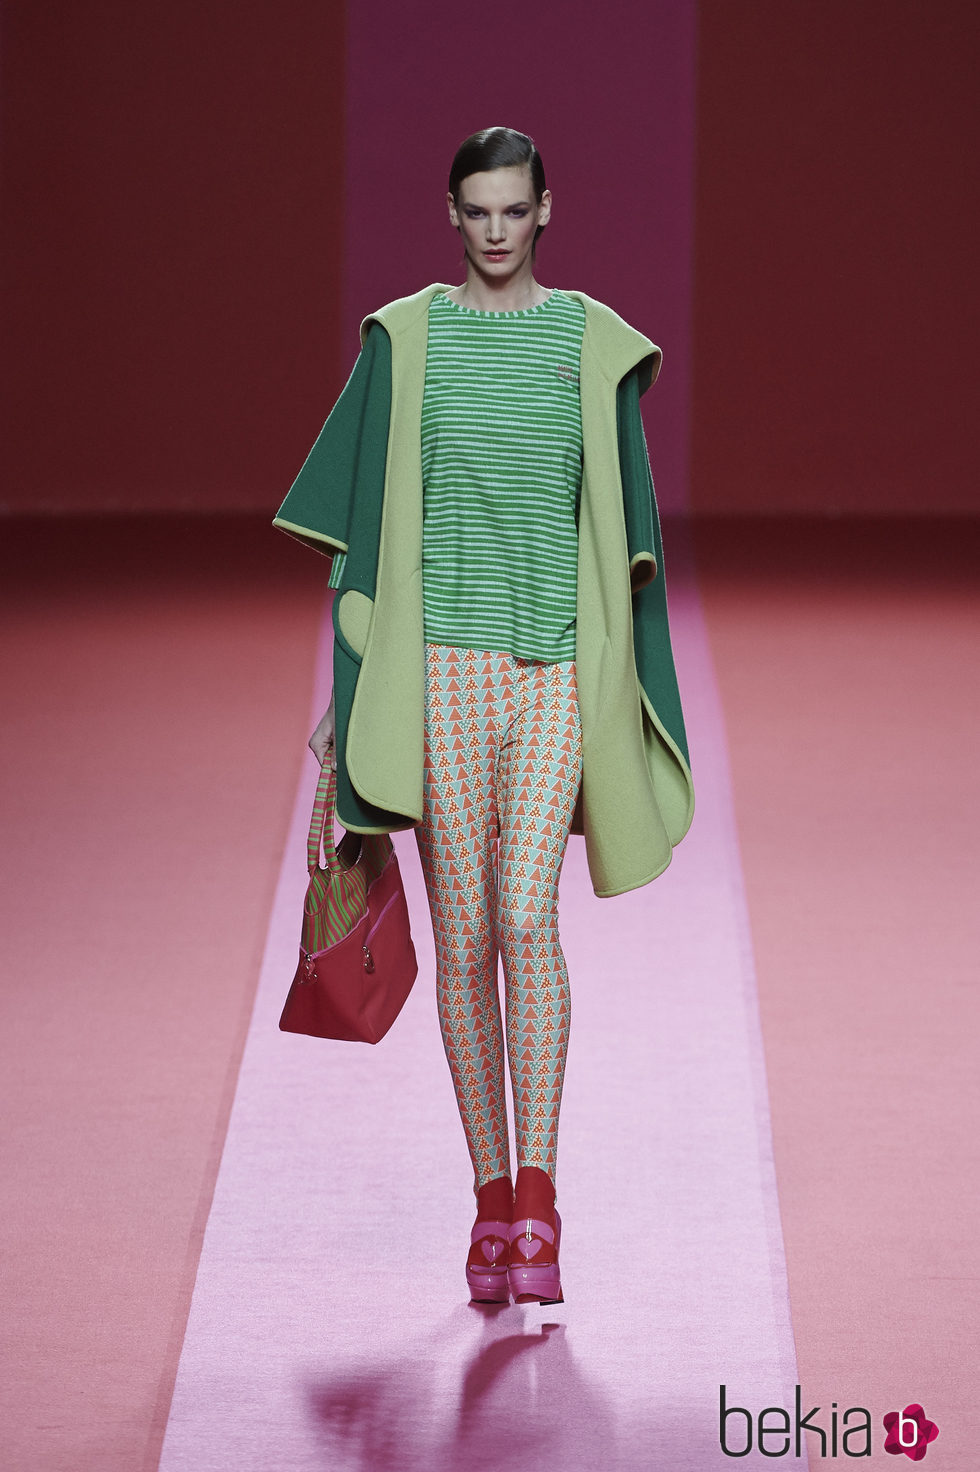 Chaquetón y camiseta verde de Agatha Ruiz de la Prada para otoño/invierno 2015/2016 en Madrid Fashion Week